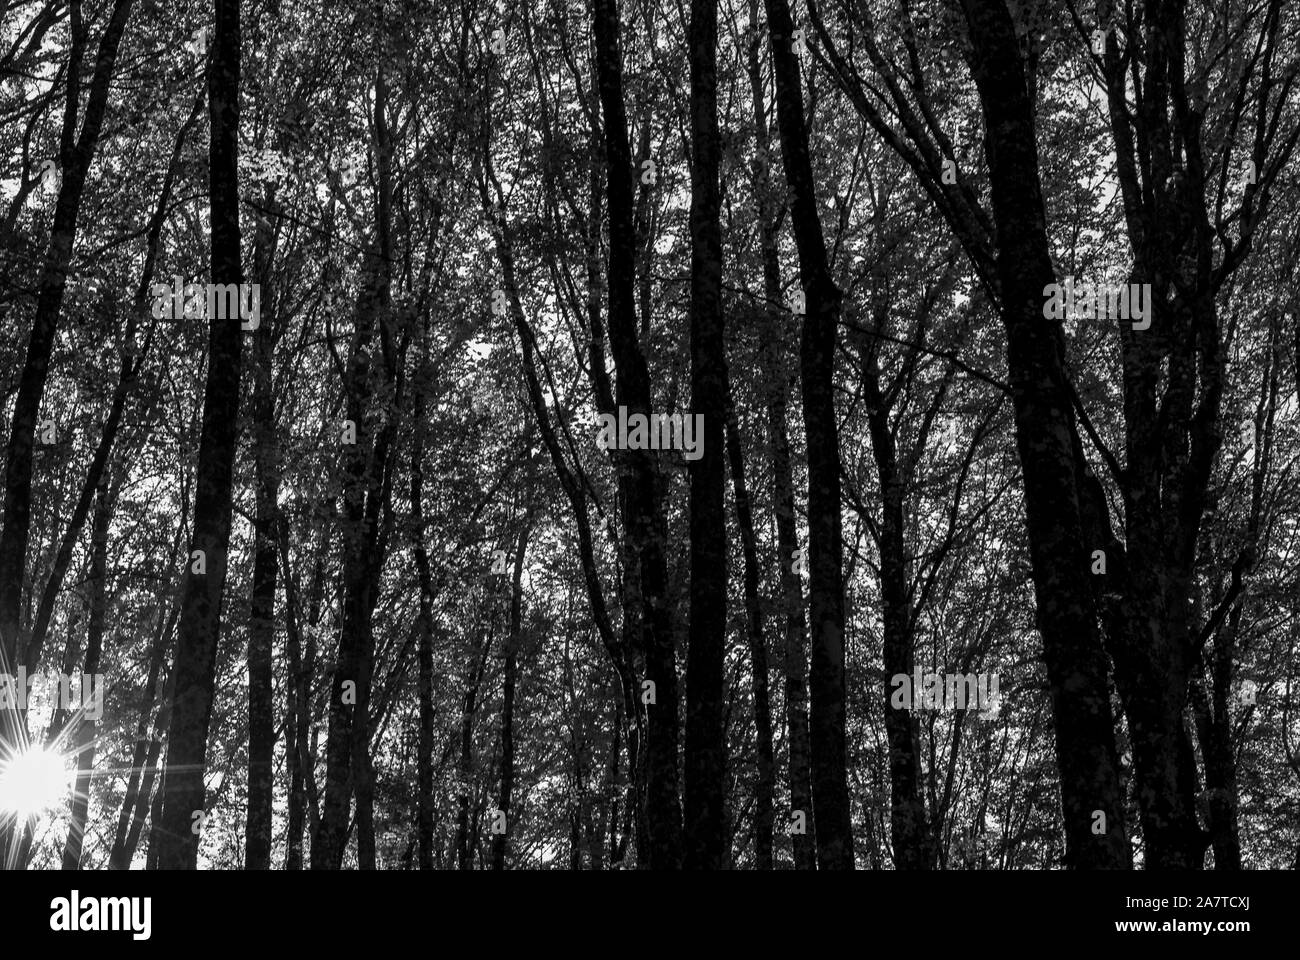 Foto von einem Buchenwald, in Schwarz und Weiß, mit einer Amtsleitung Silhouette Stockfoto